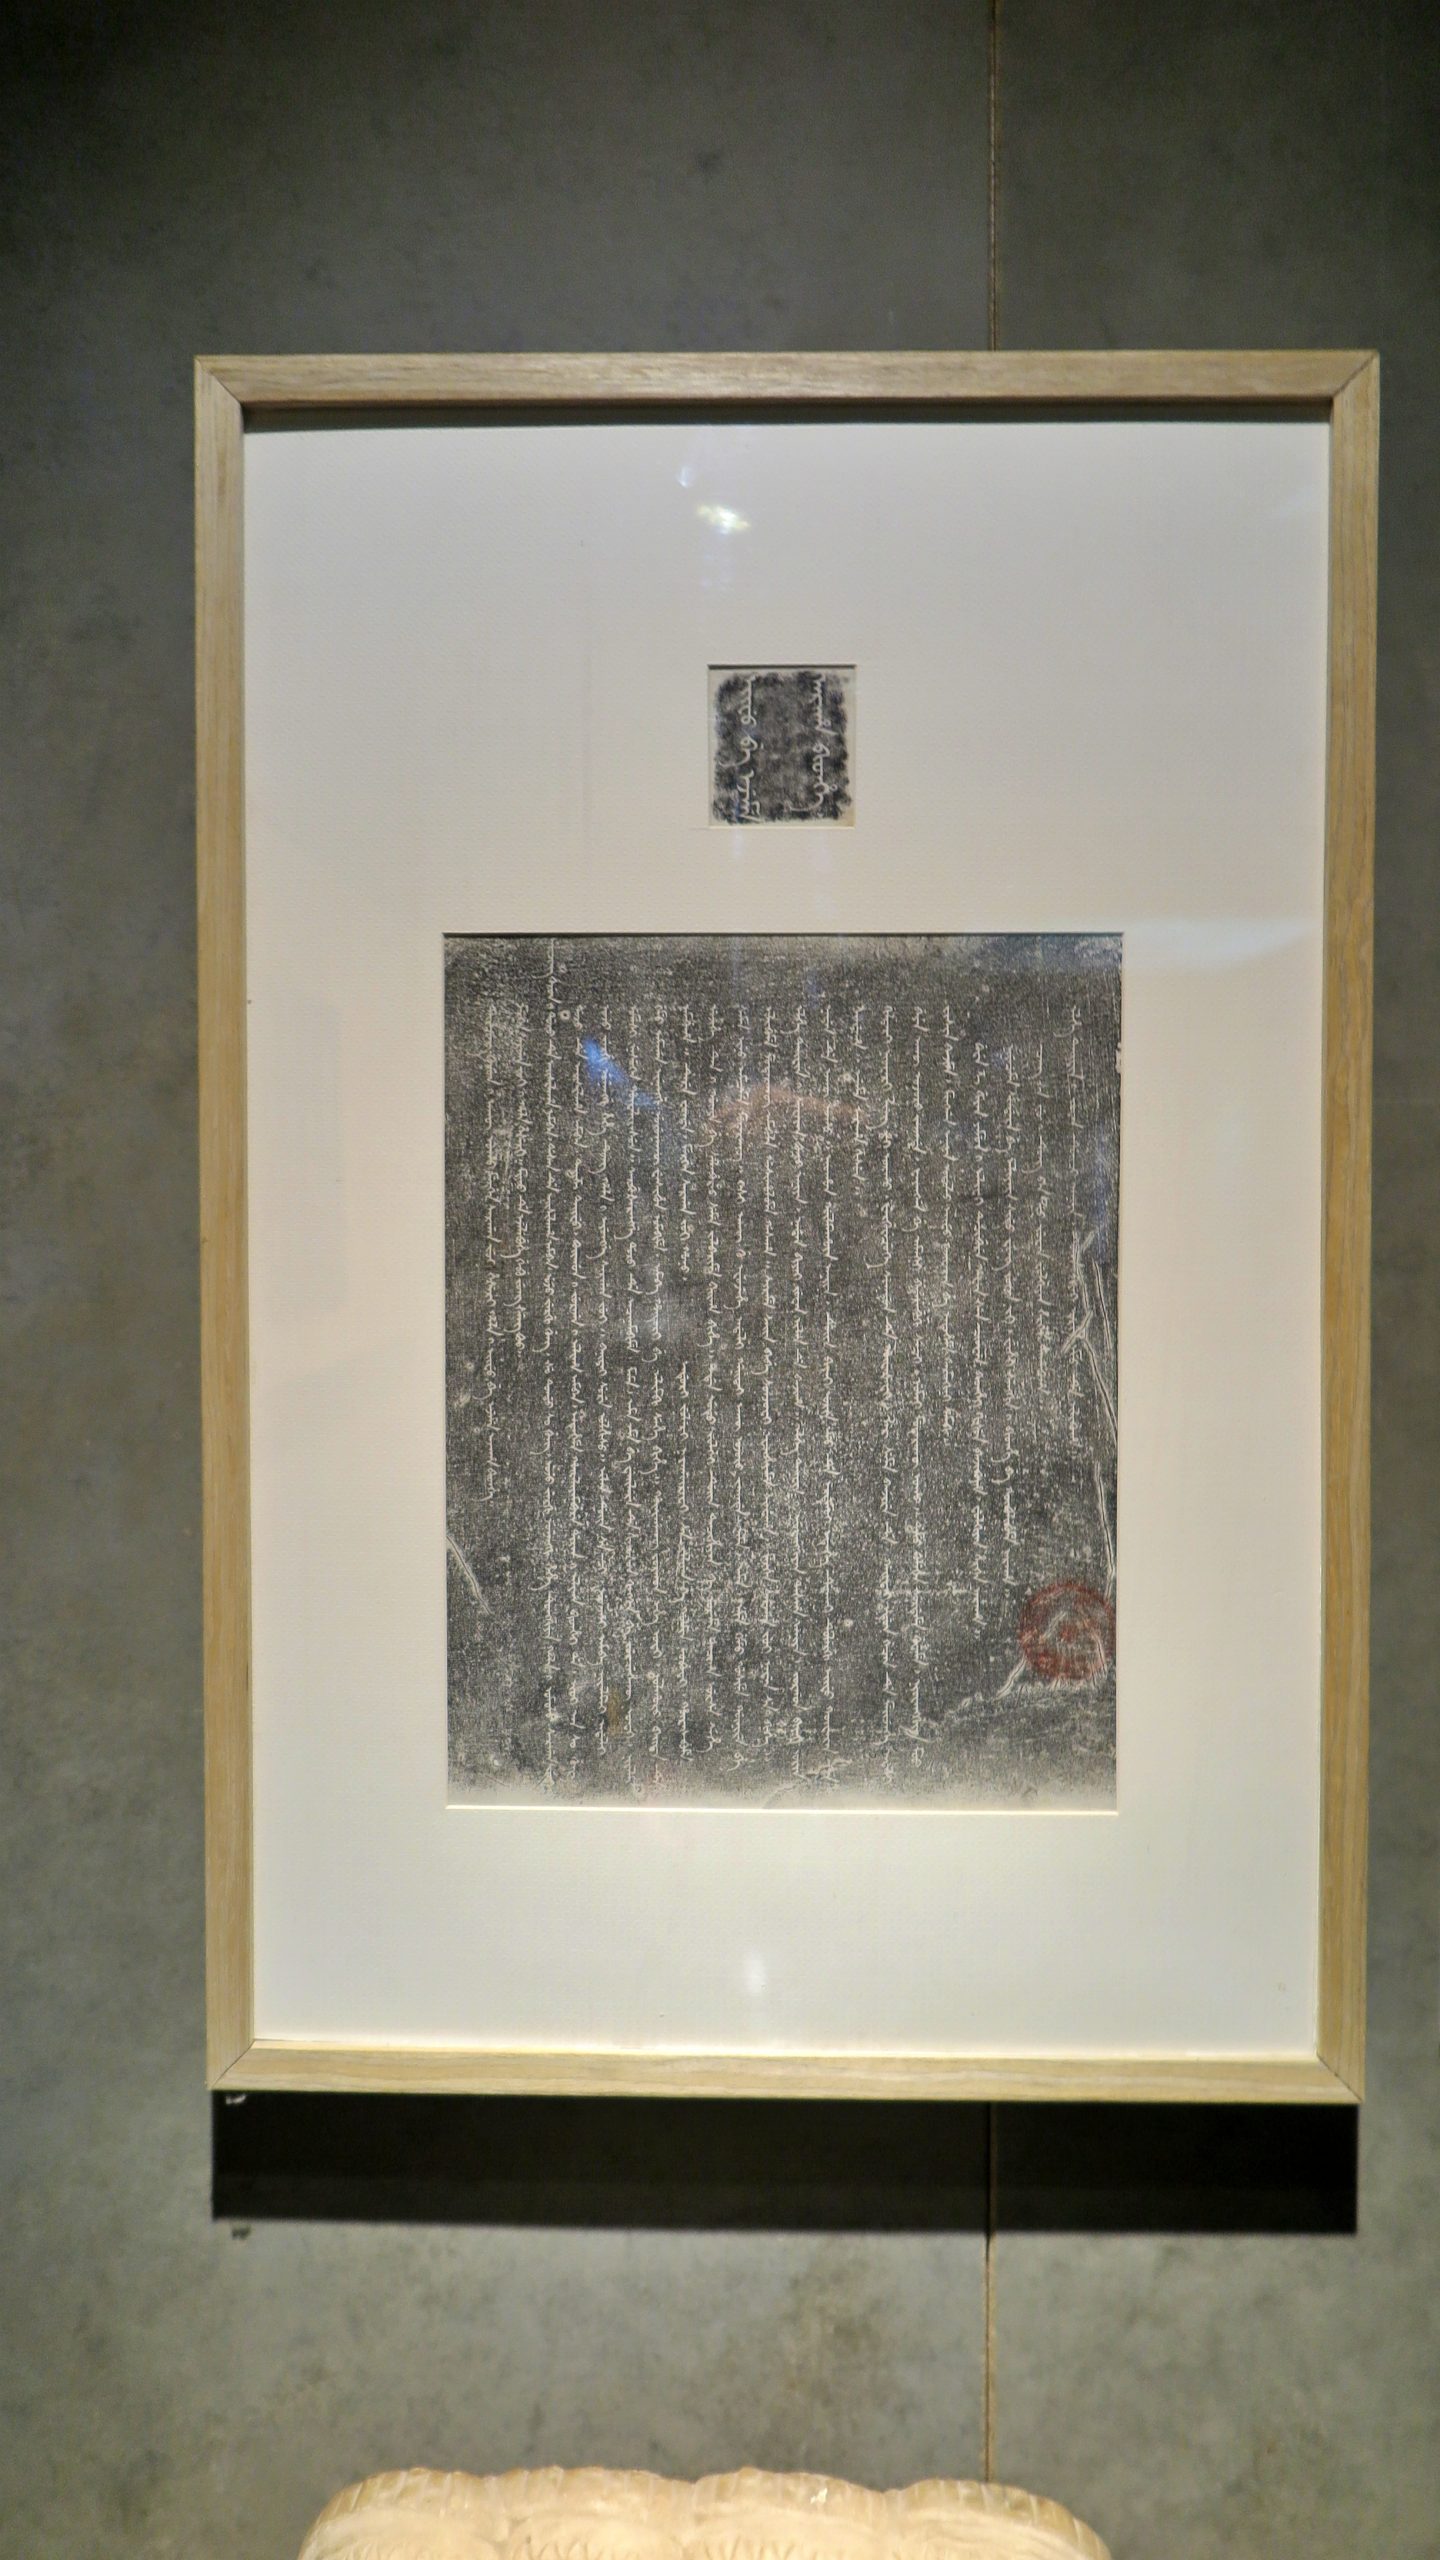 黑舍里氏圹志 Heiseli's Epitaph Stone NO:48